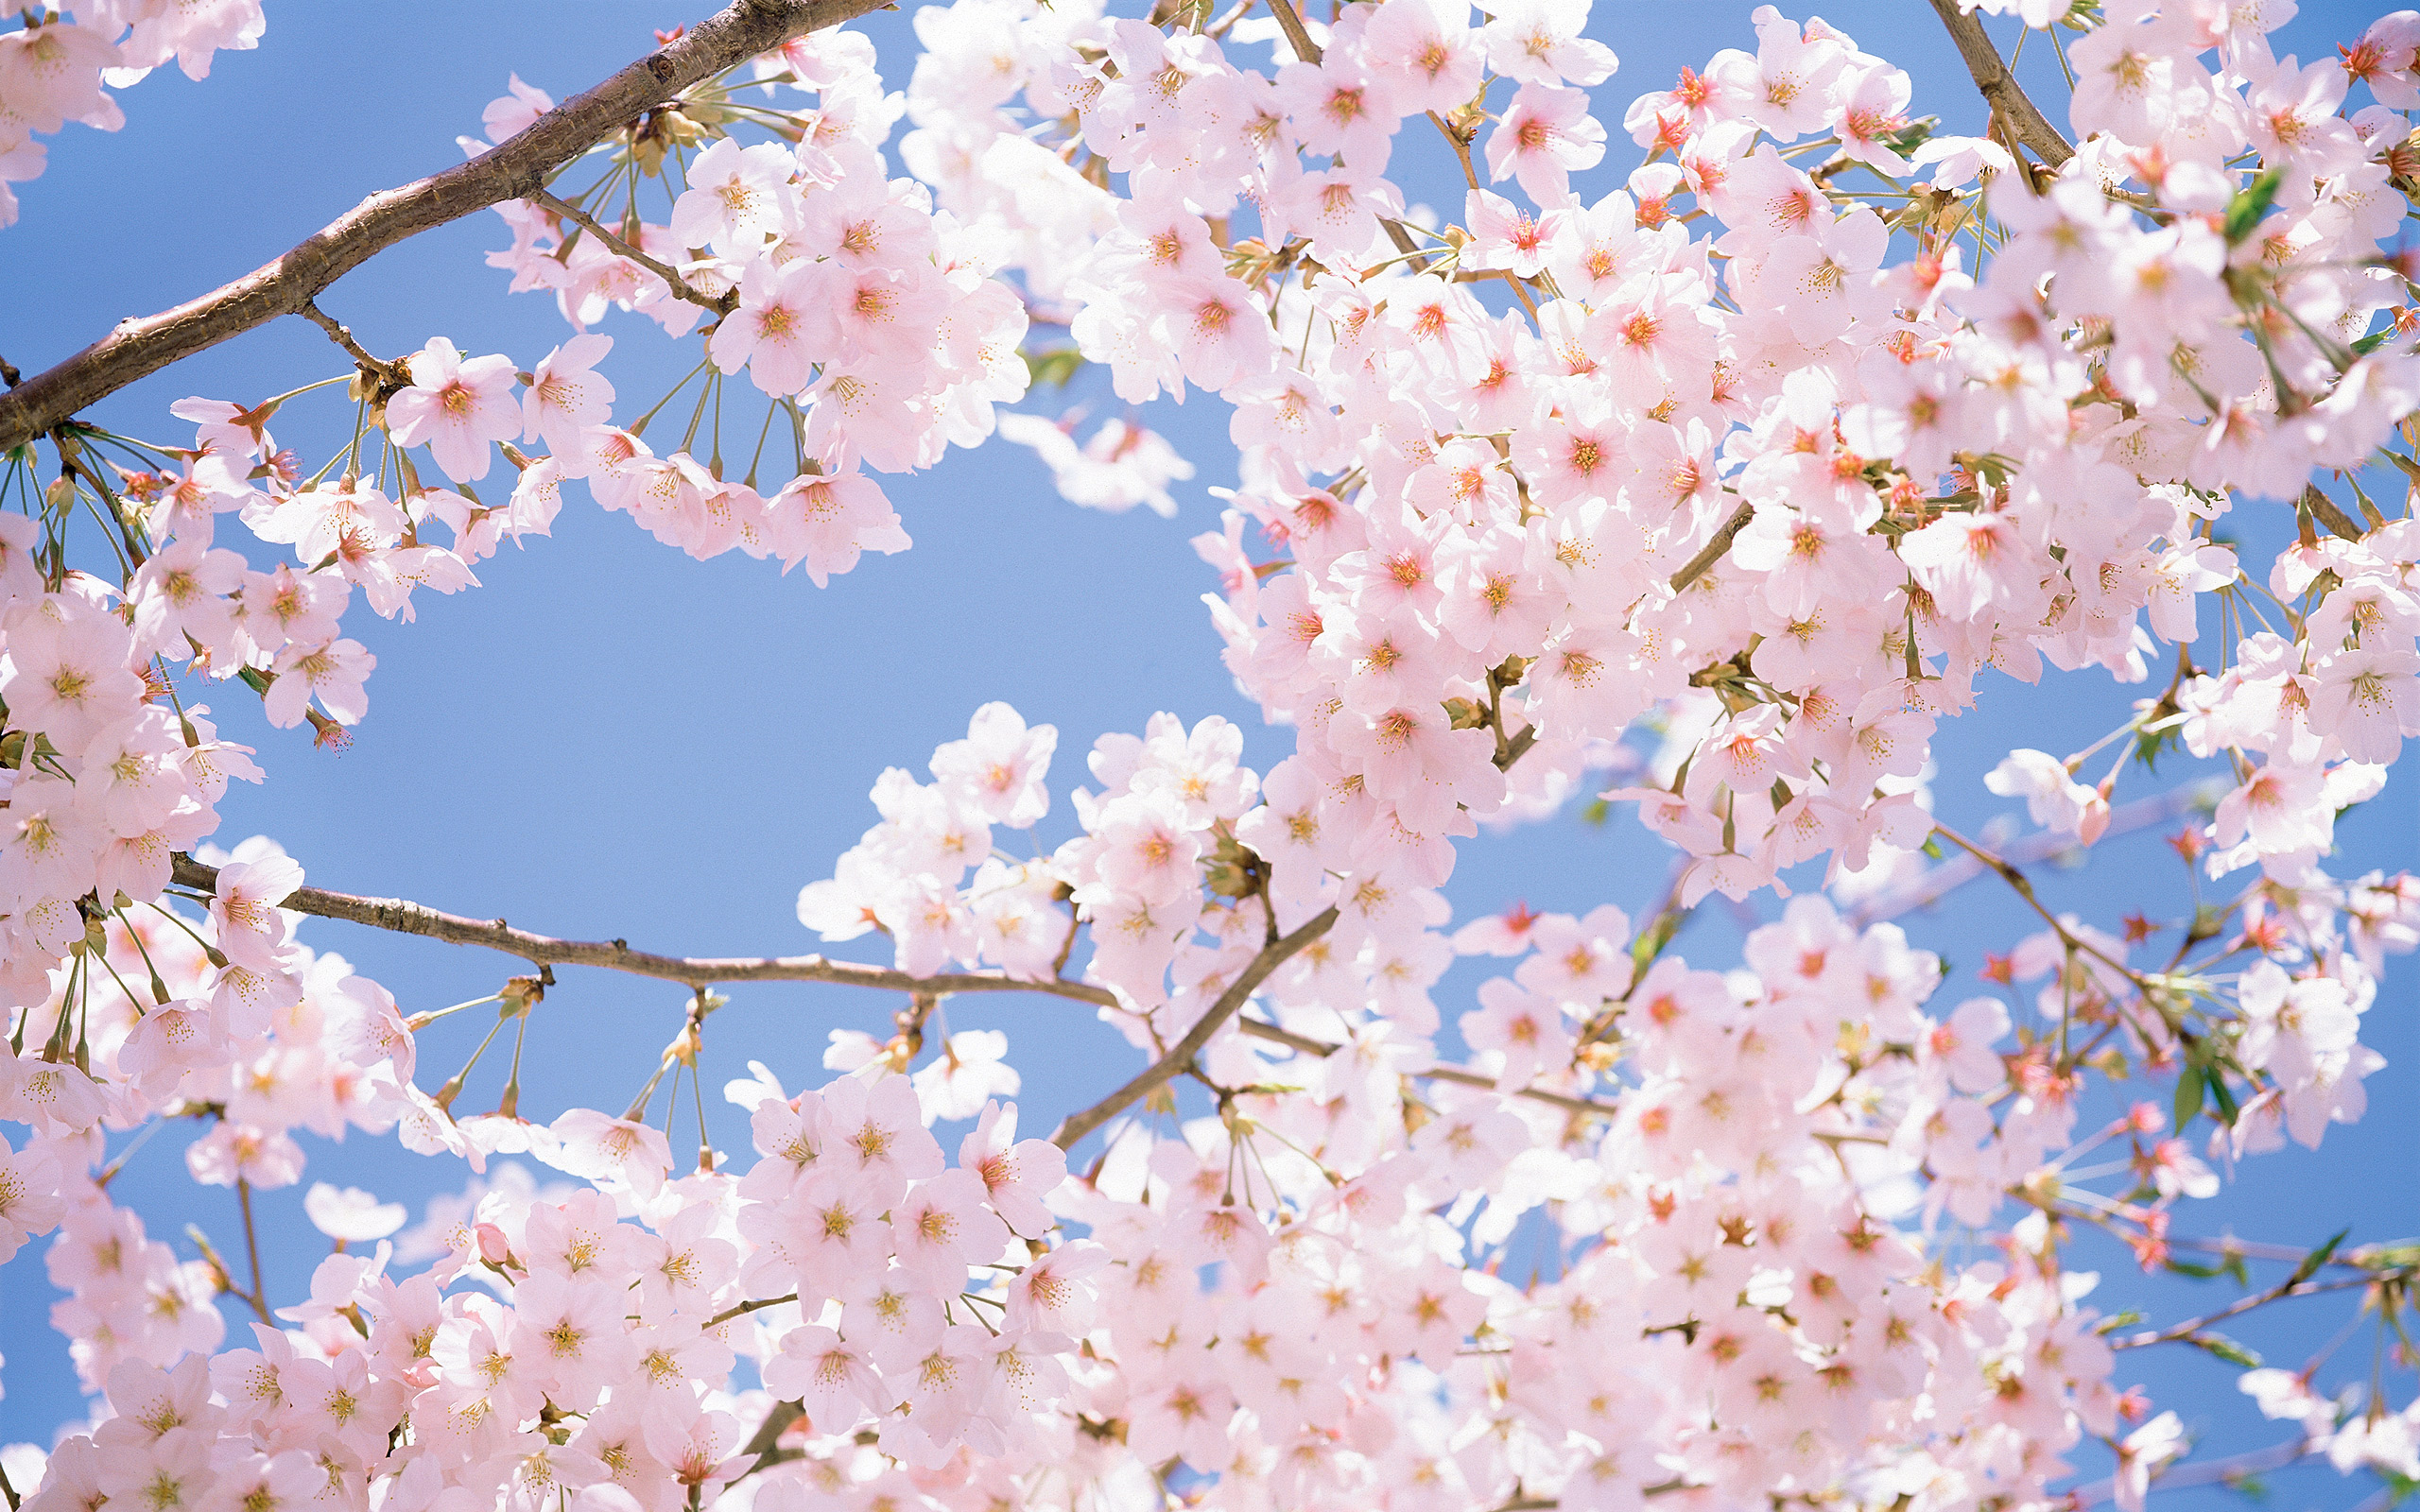 Ý nghĩa của hoa anh đào trong văn hoá Nhật Bản